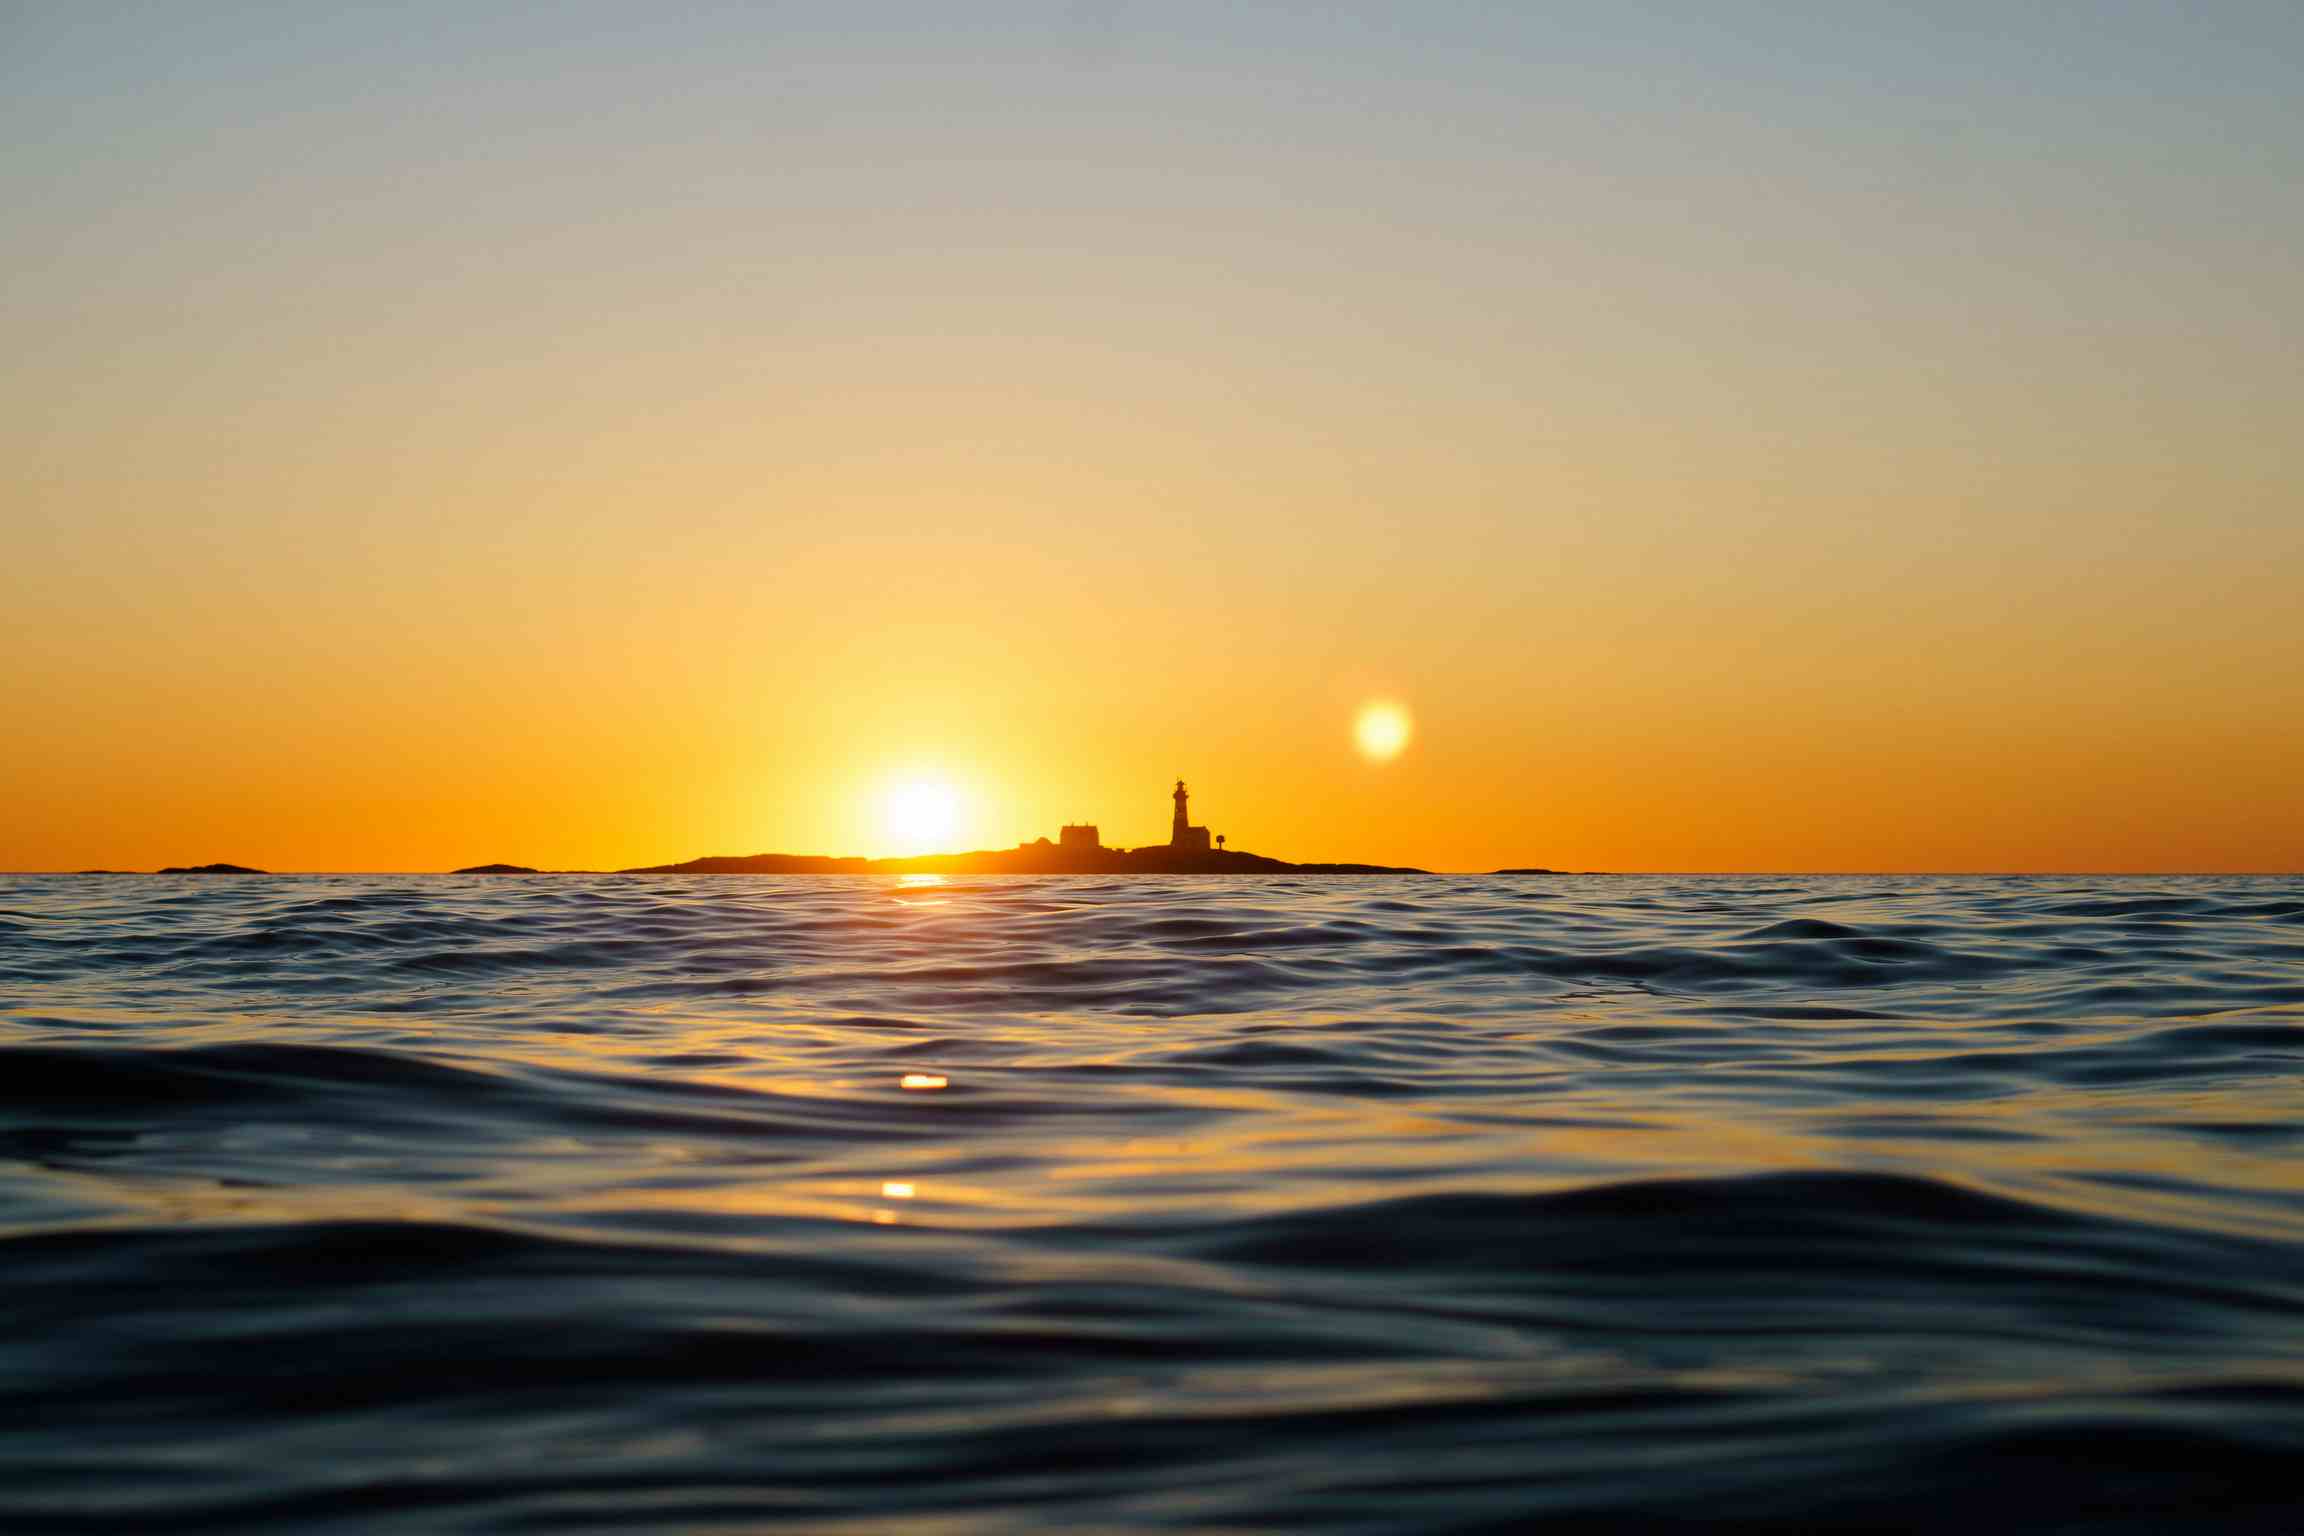 Person i vannet som kiter med solnedgangen bak seg. Bilder er i gulfarger pga. solnedgang